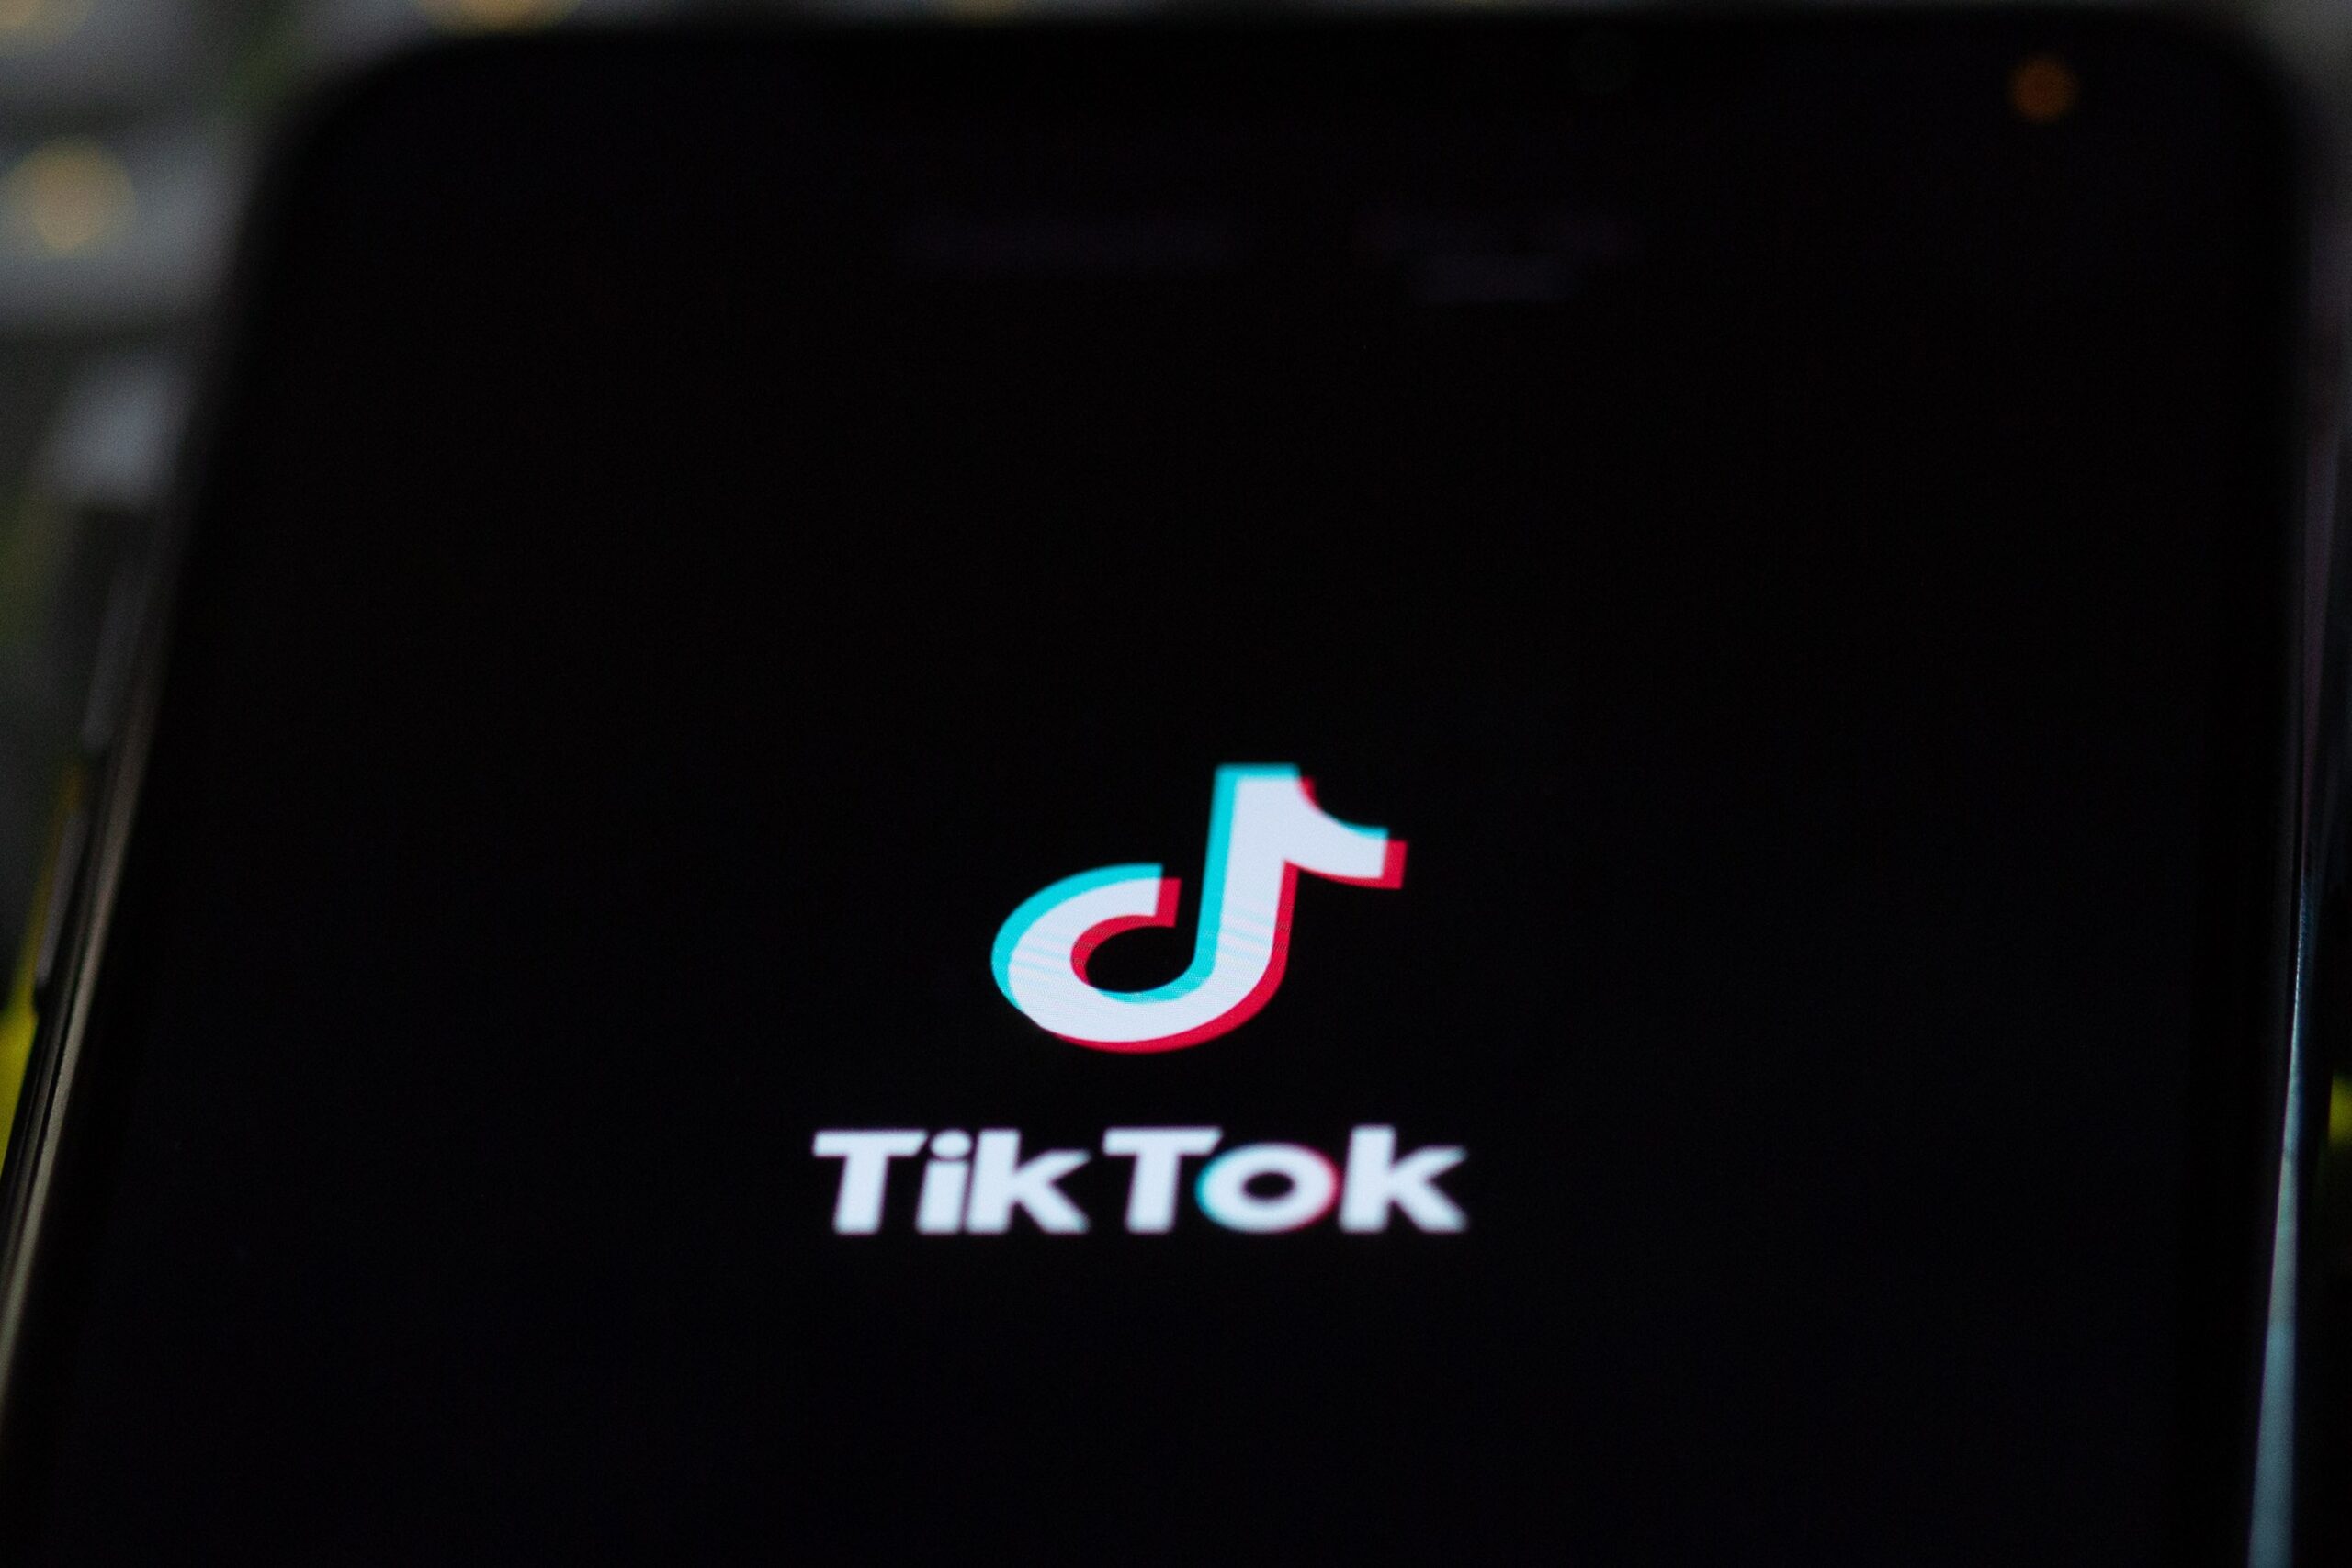 TikTok app loading on a cellular device